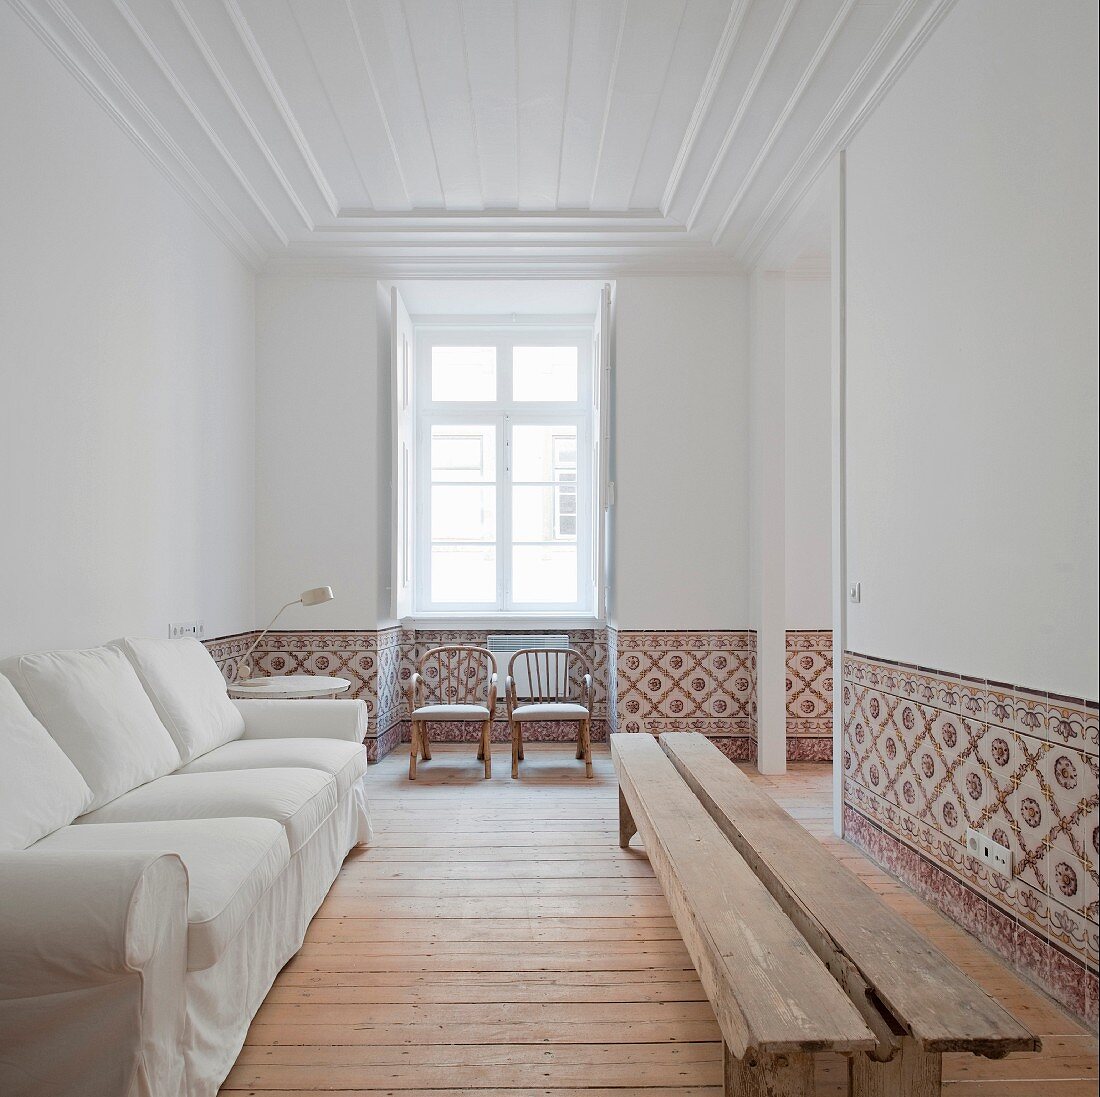 Weisses Sofa an Wand gegenüber rustikale Holzbank in weiße Wohnzimmer mit Wandfliesen in Brüstungshöhe